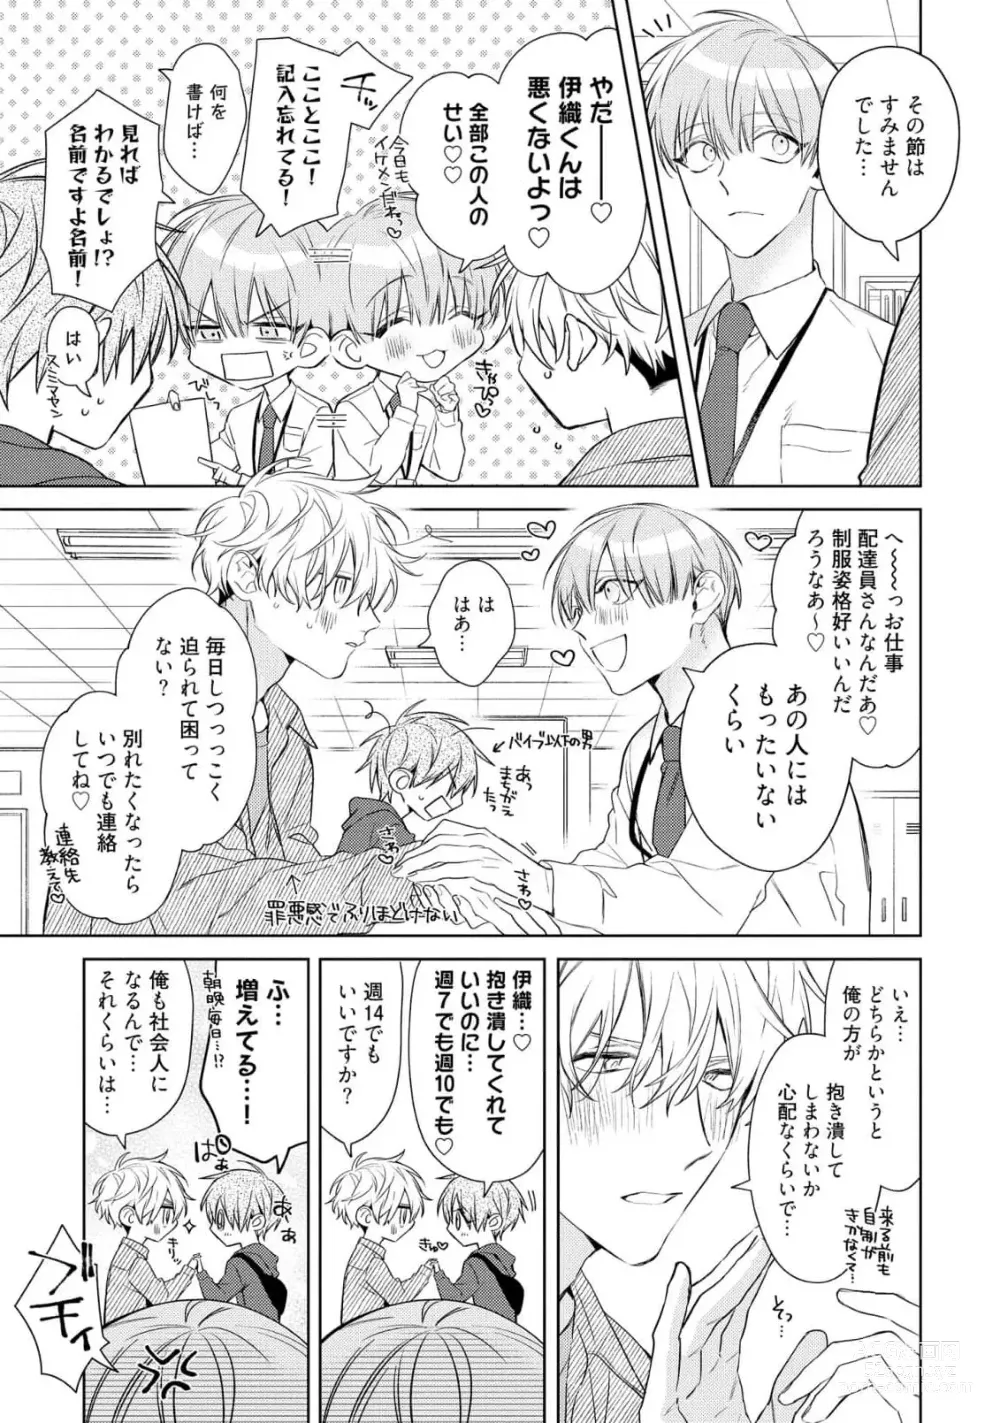 Page 15 of manga Motto! Ecchi wa shuu 7 Kibou Desu!